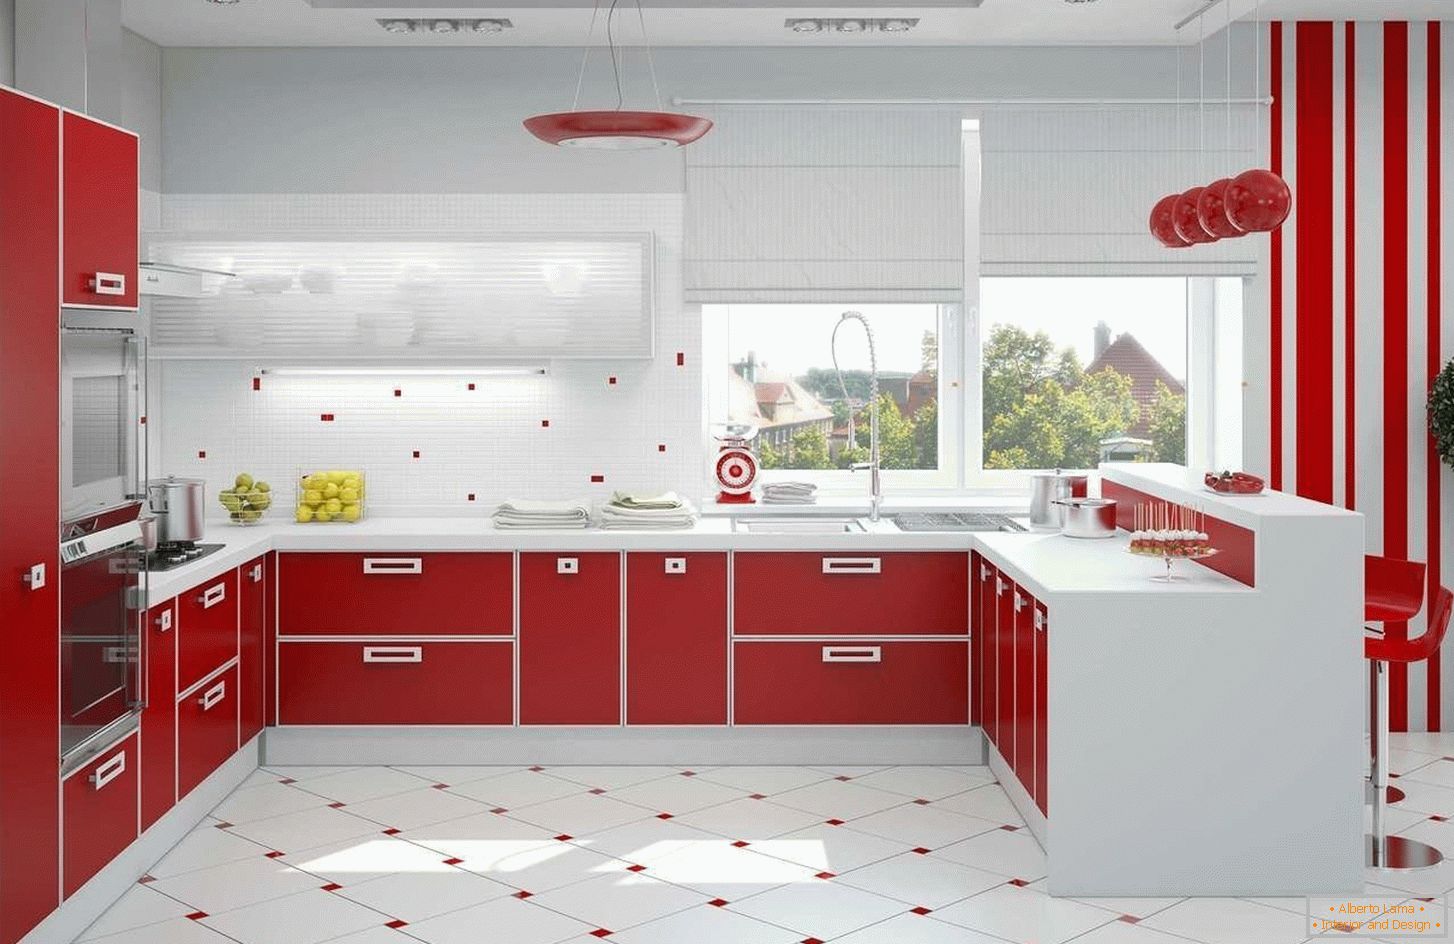 Crvena i bijela kuhinja interijera